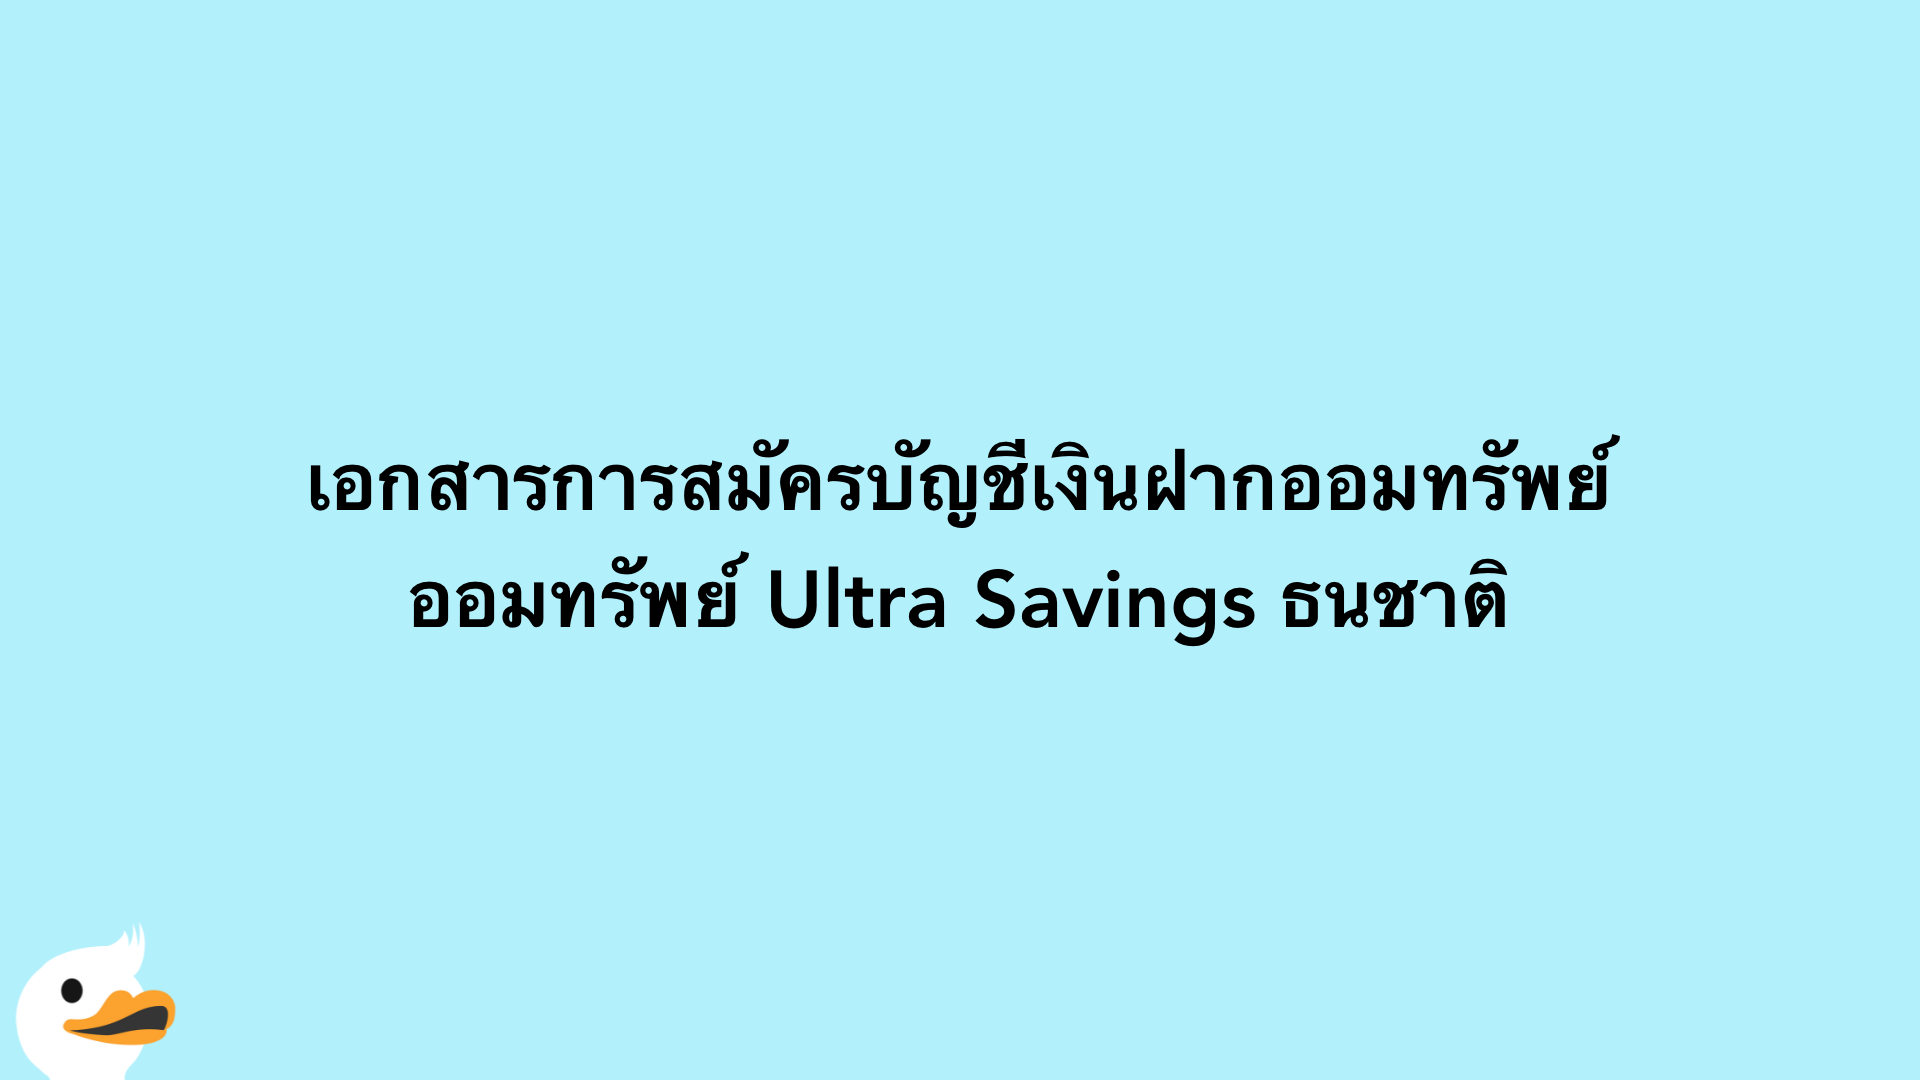 เอกสารการสมัครบัญชีเงินฝากออมทรัพย์ ออมทรัพย์ Ultra Savings ธนชาติ